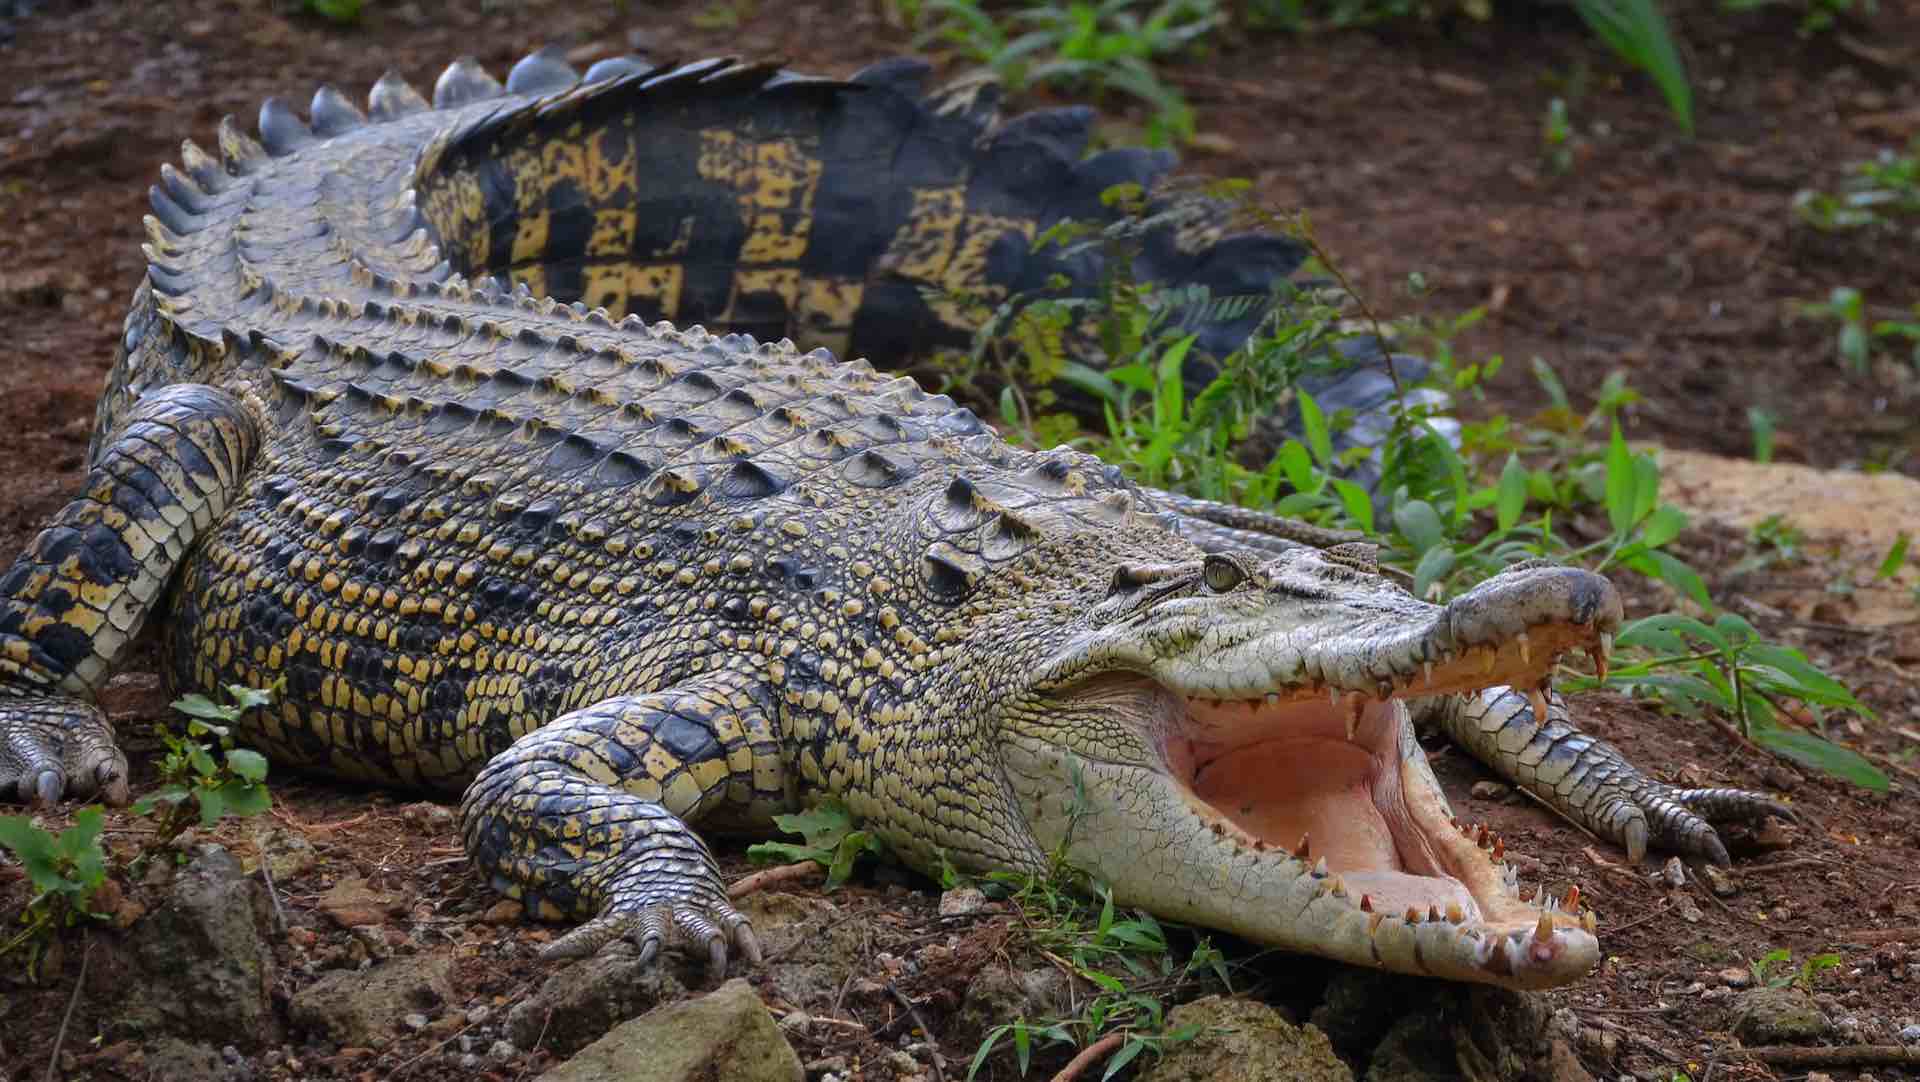 توثيق واقعة نادرة لولادة عذرية لتمساح في حديقة كوستاريكا